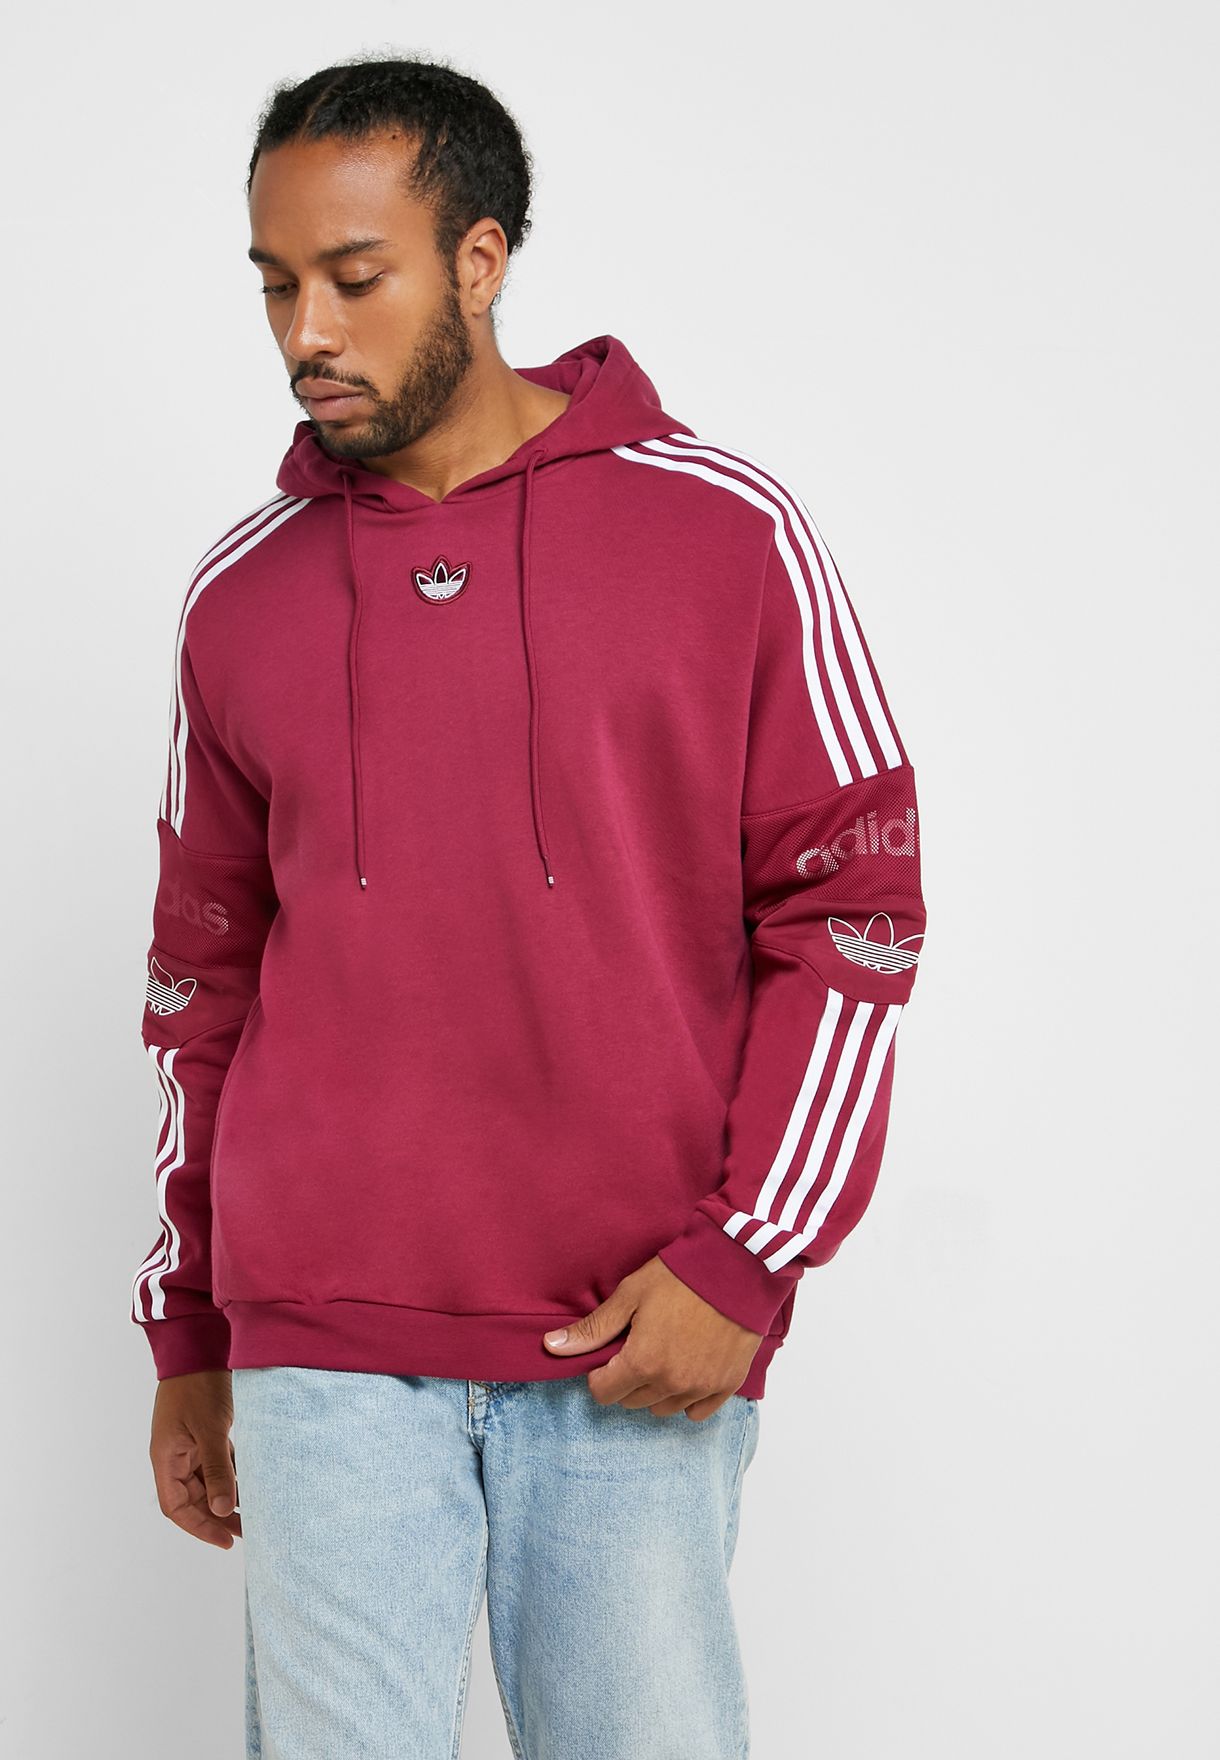 burgundy adidas hoodie mens